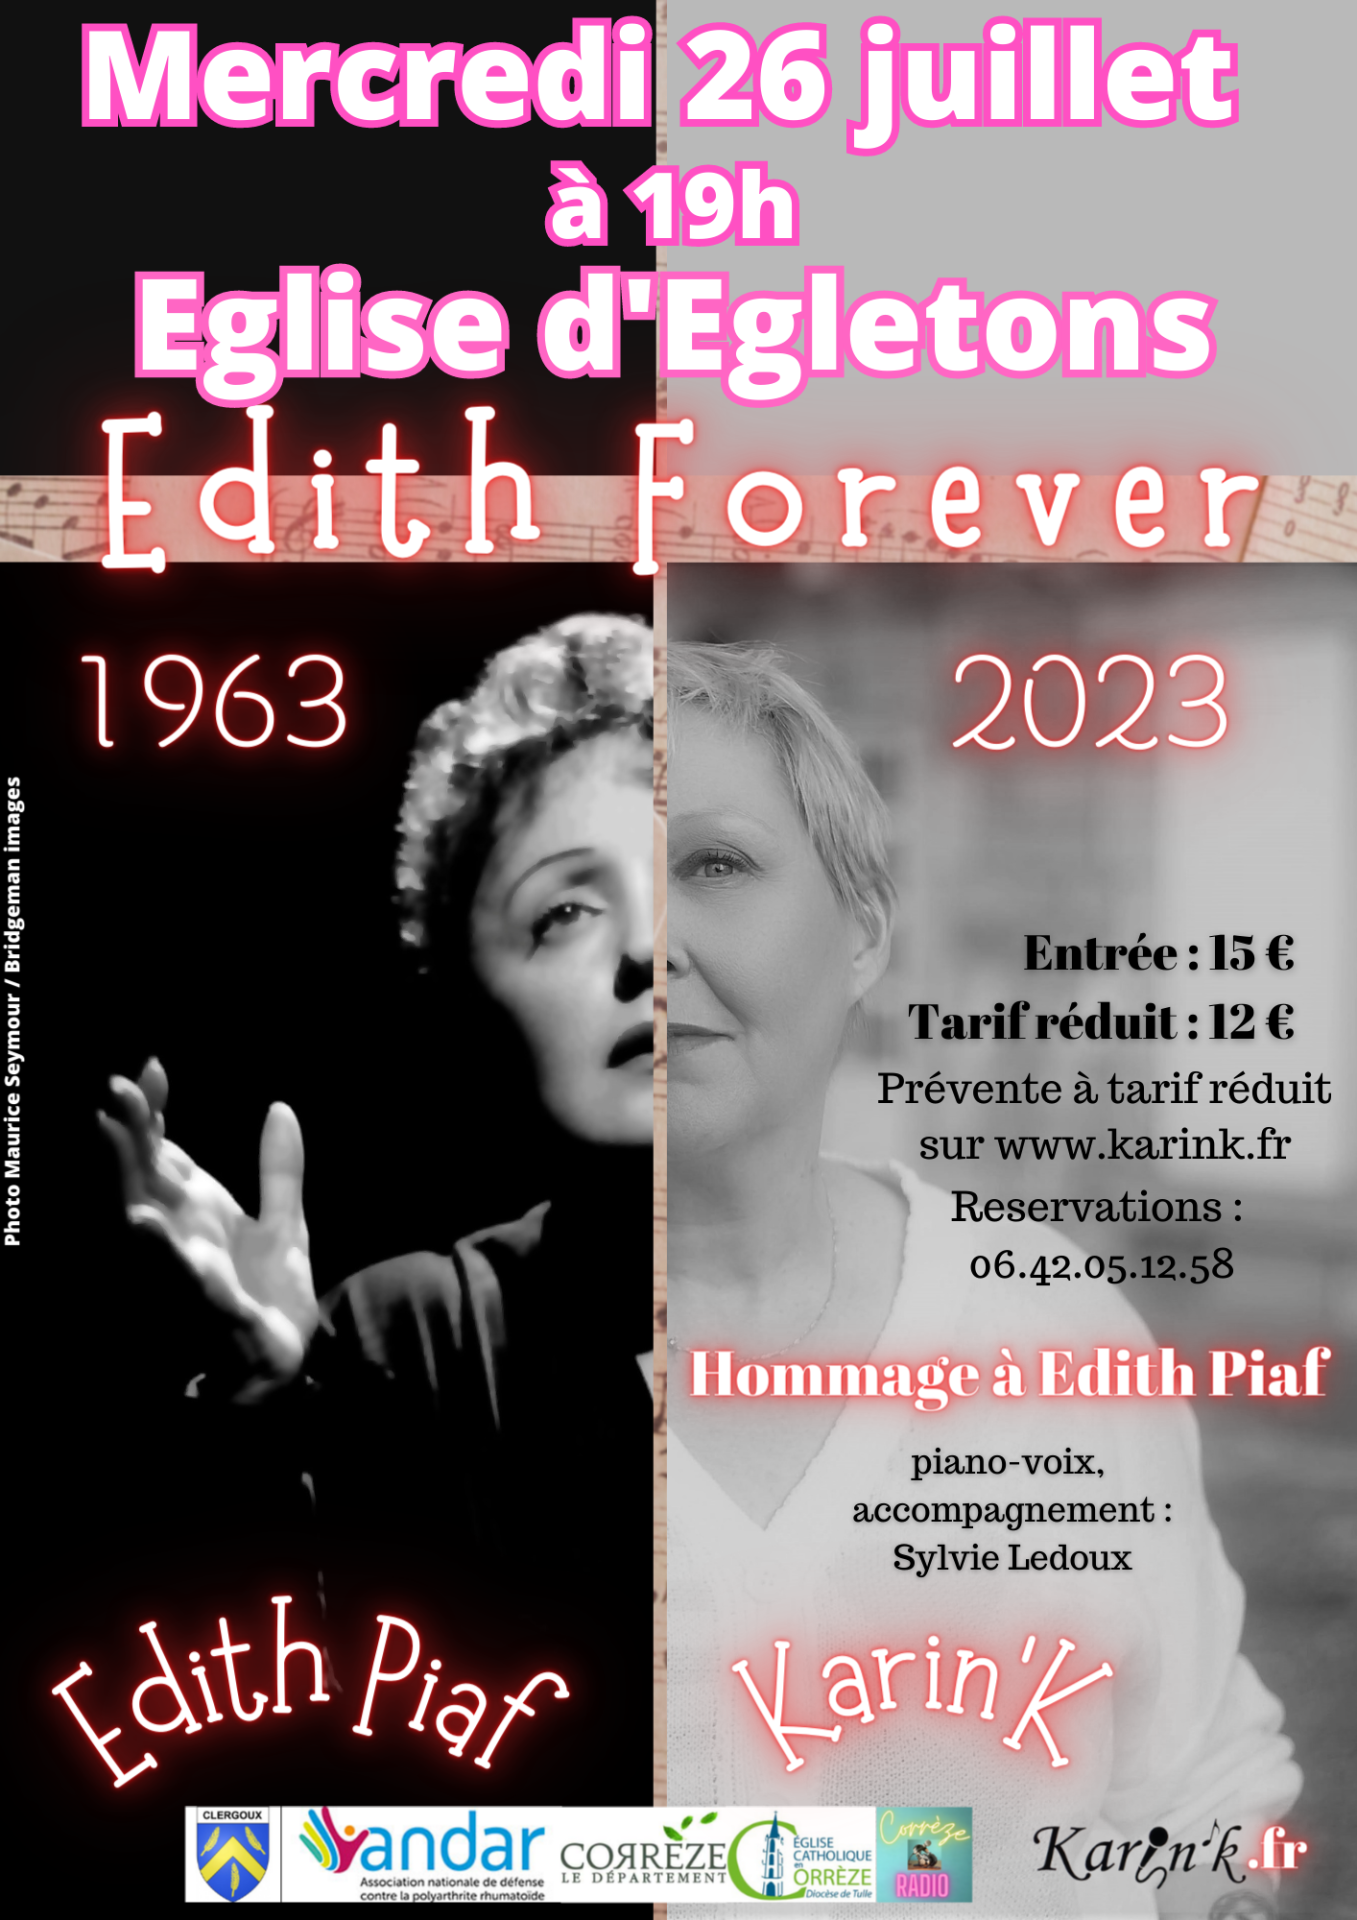 Edith forever egletons